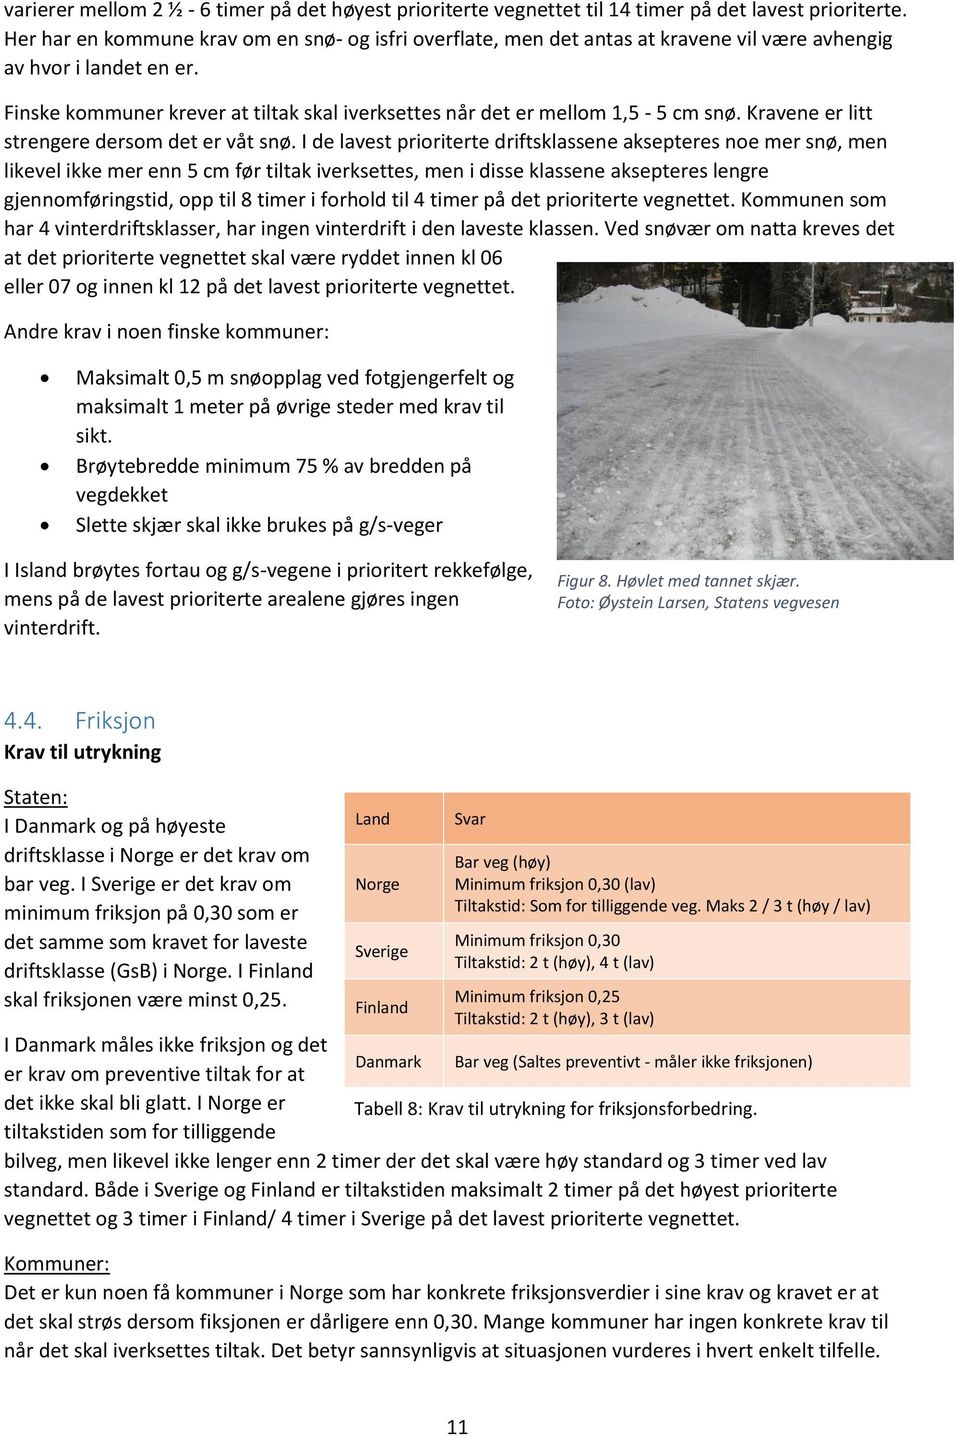 Finske kommuner krever at tiltak skal iverksettes når det er mellom 1,5-5 cm snø. Kravene er litt strengere dersom det er våt snø.